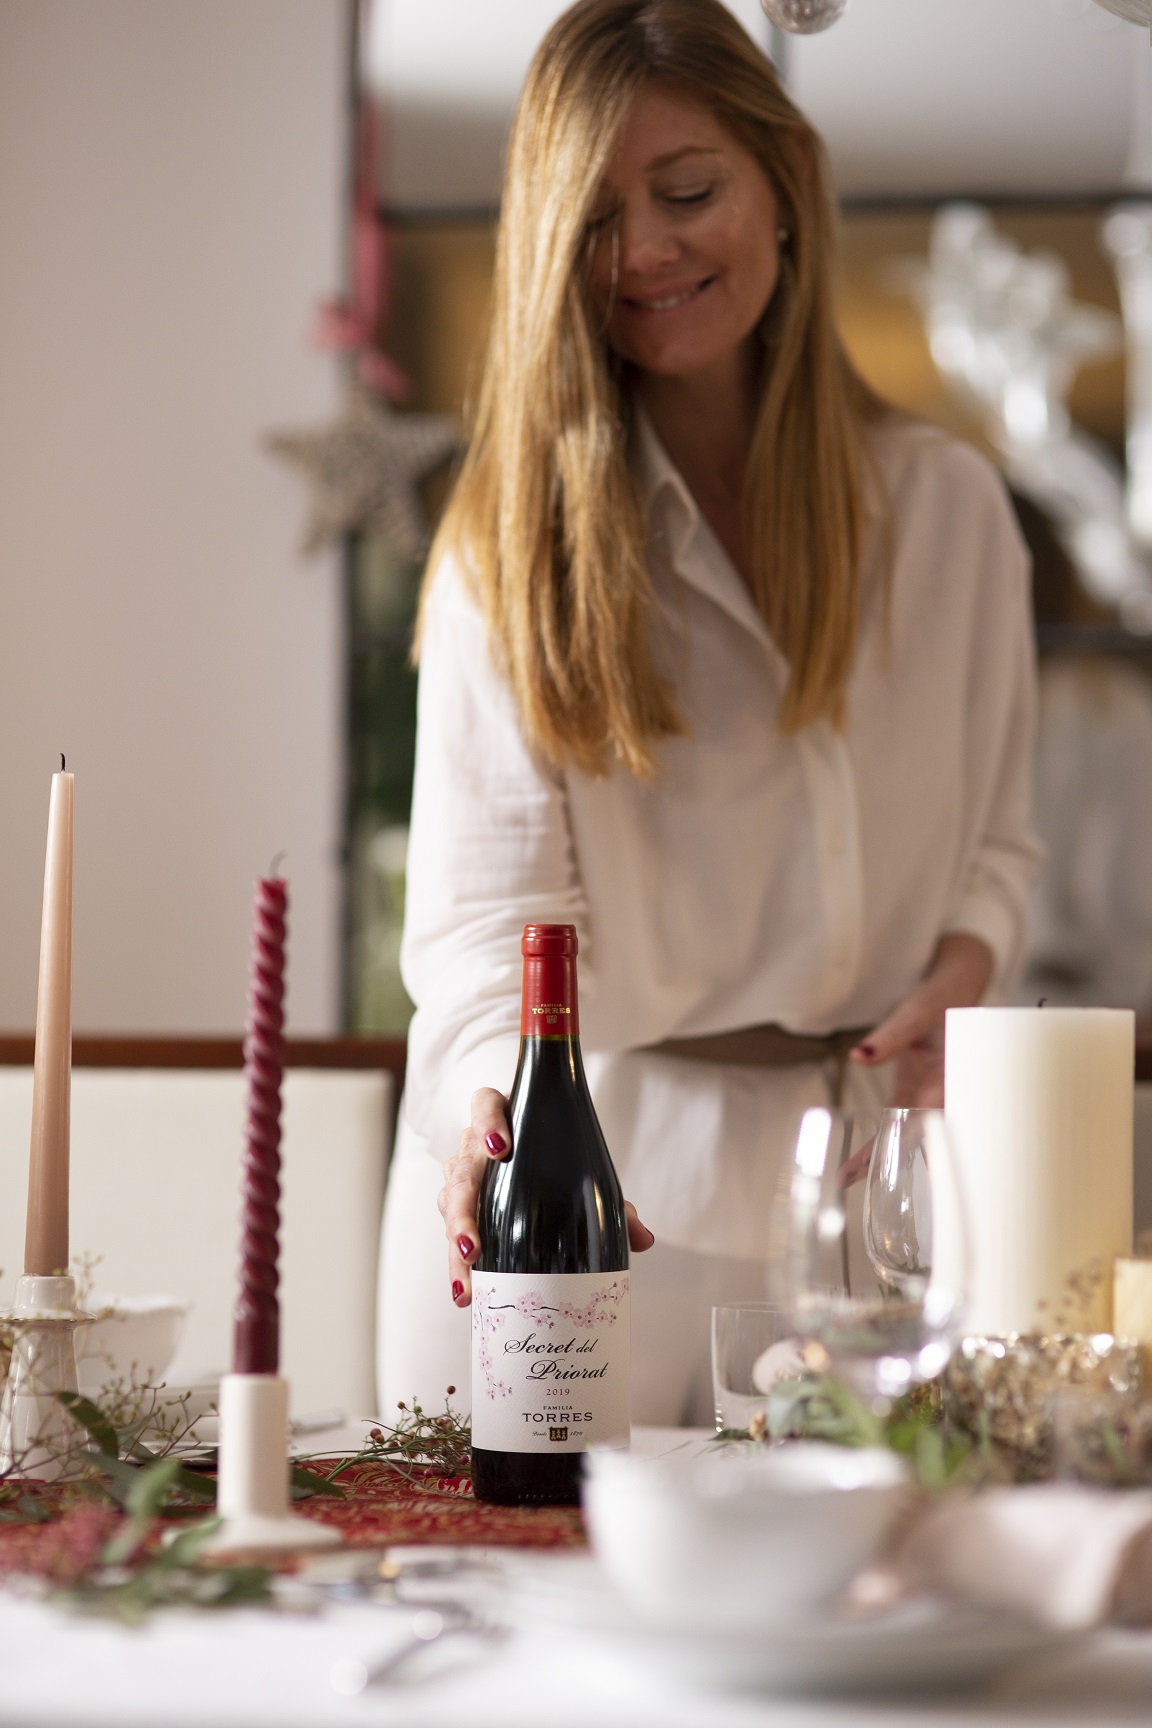 La estilista @saboresymomentos colocando a la mesa el vino Secret del Priorat de Familia Torres, fuente de inspiración para su mesa navideña.